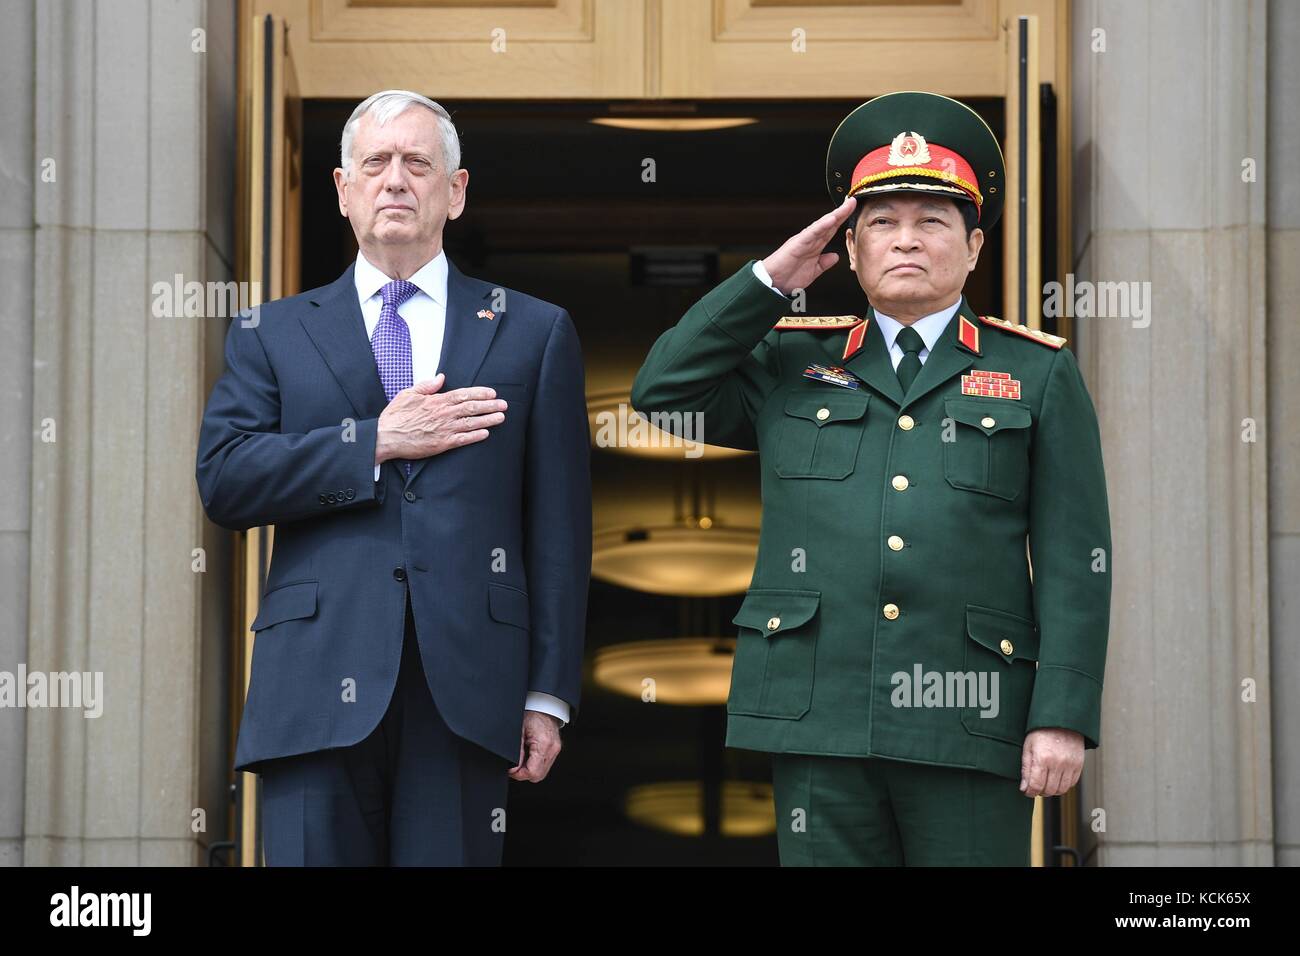 Us-Verteidigungsminister James Mattis (links) und der vietnamesischen nationalen Verteidigungsminister ngo Xuan lich machen Ehren während der Nationalhymne im Pentagon August 8, 2017 in Arlington, Virginia. (Foto von Tammy Schäferstündchen über planetpix) Stockfoto